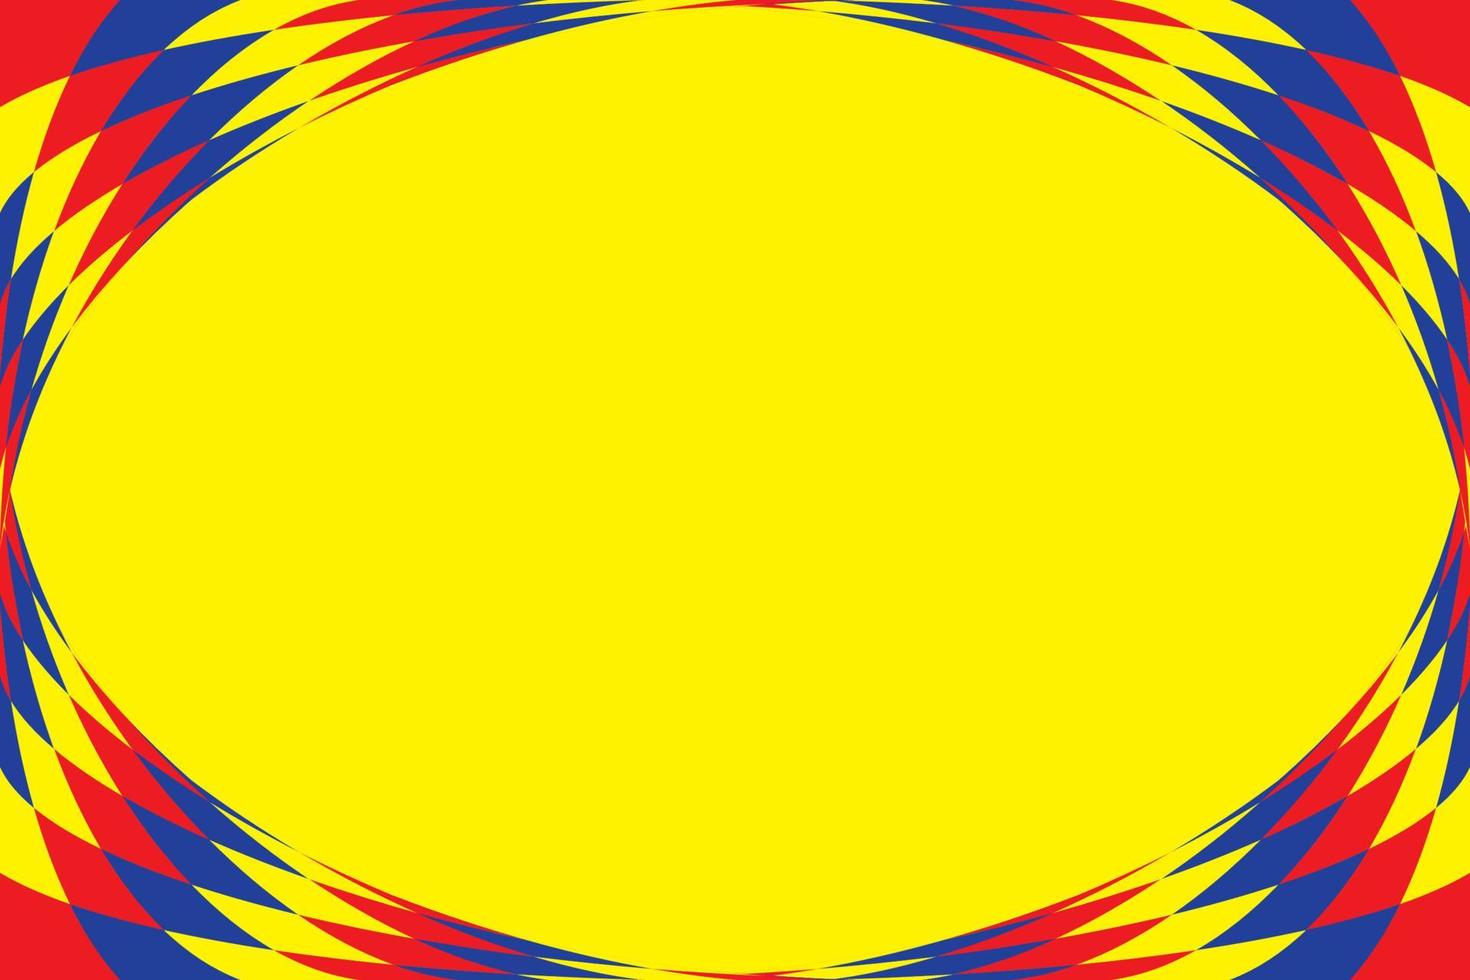 fundo de cores primárias, azul, vermelho e amarelo com forma geométrica. ilustração vetorial. vetor